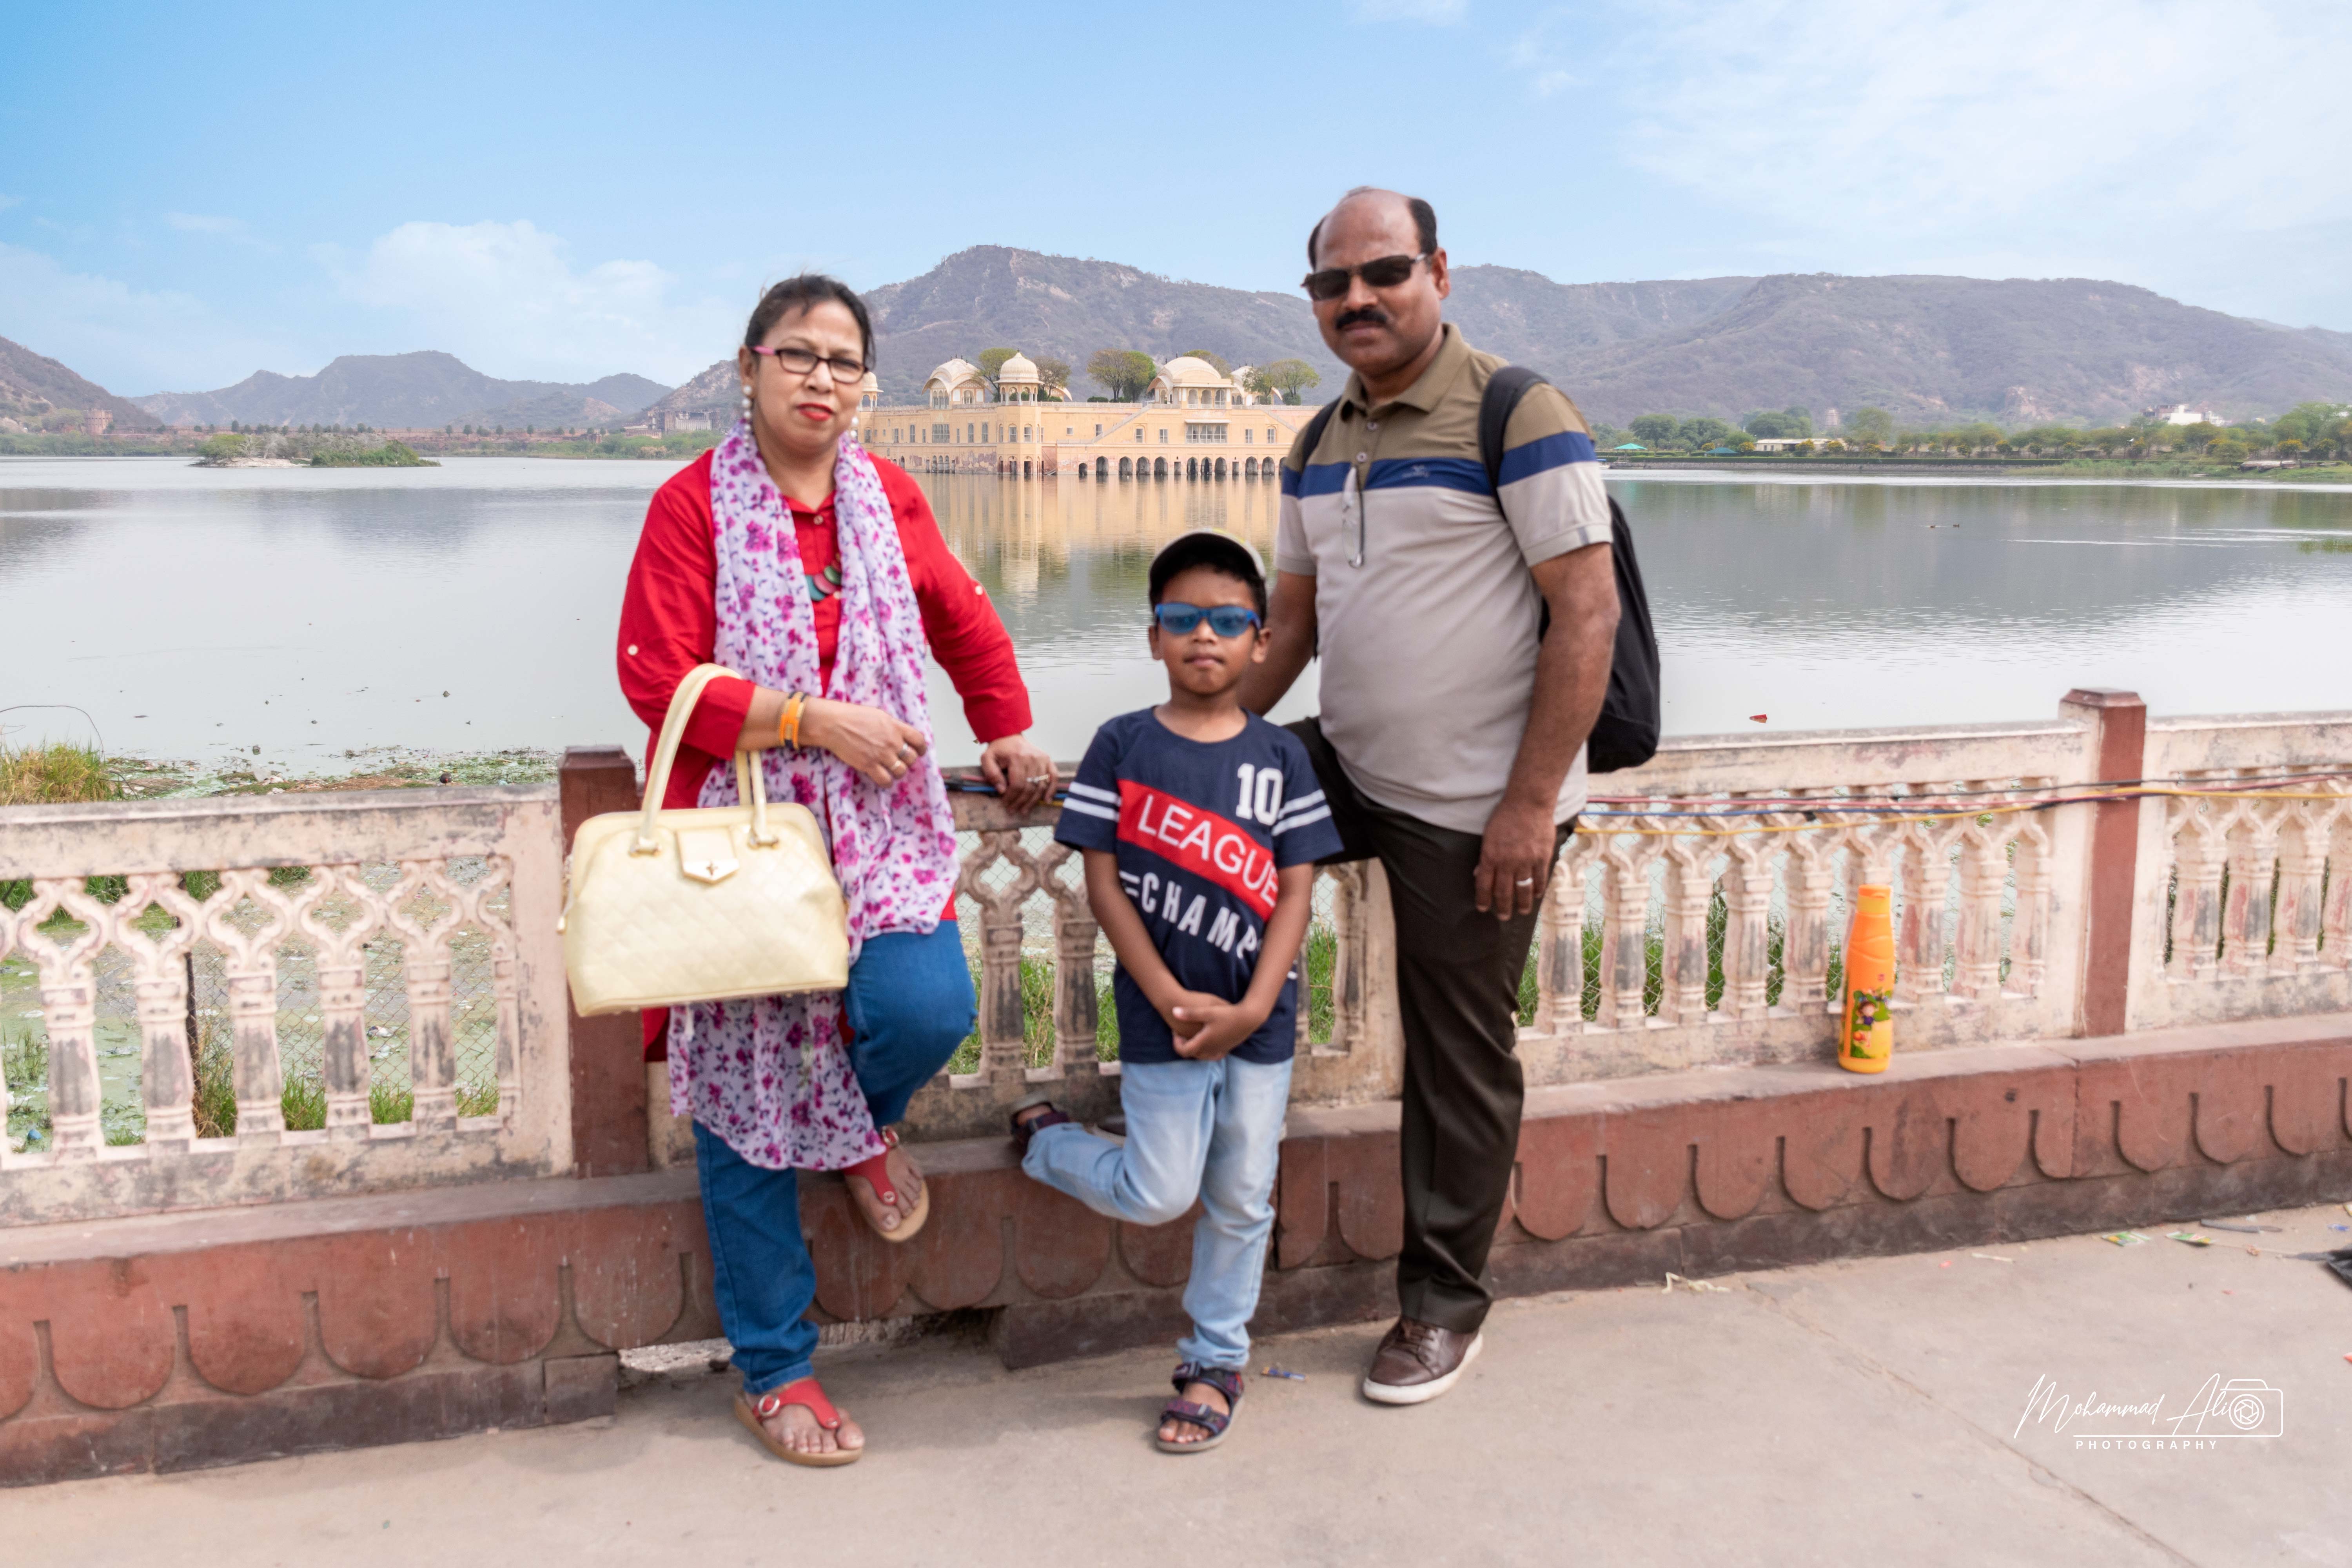 Vacation at Pink City Jaipur